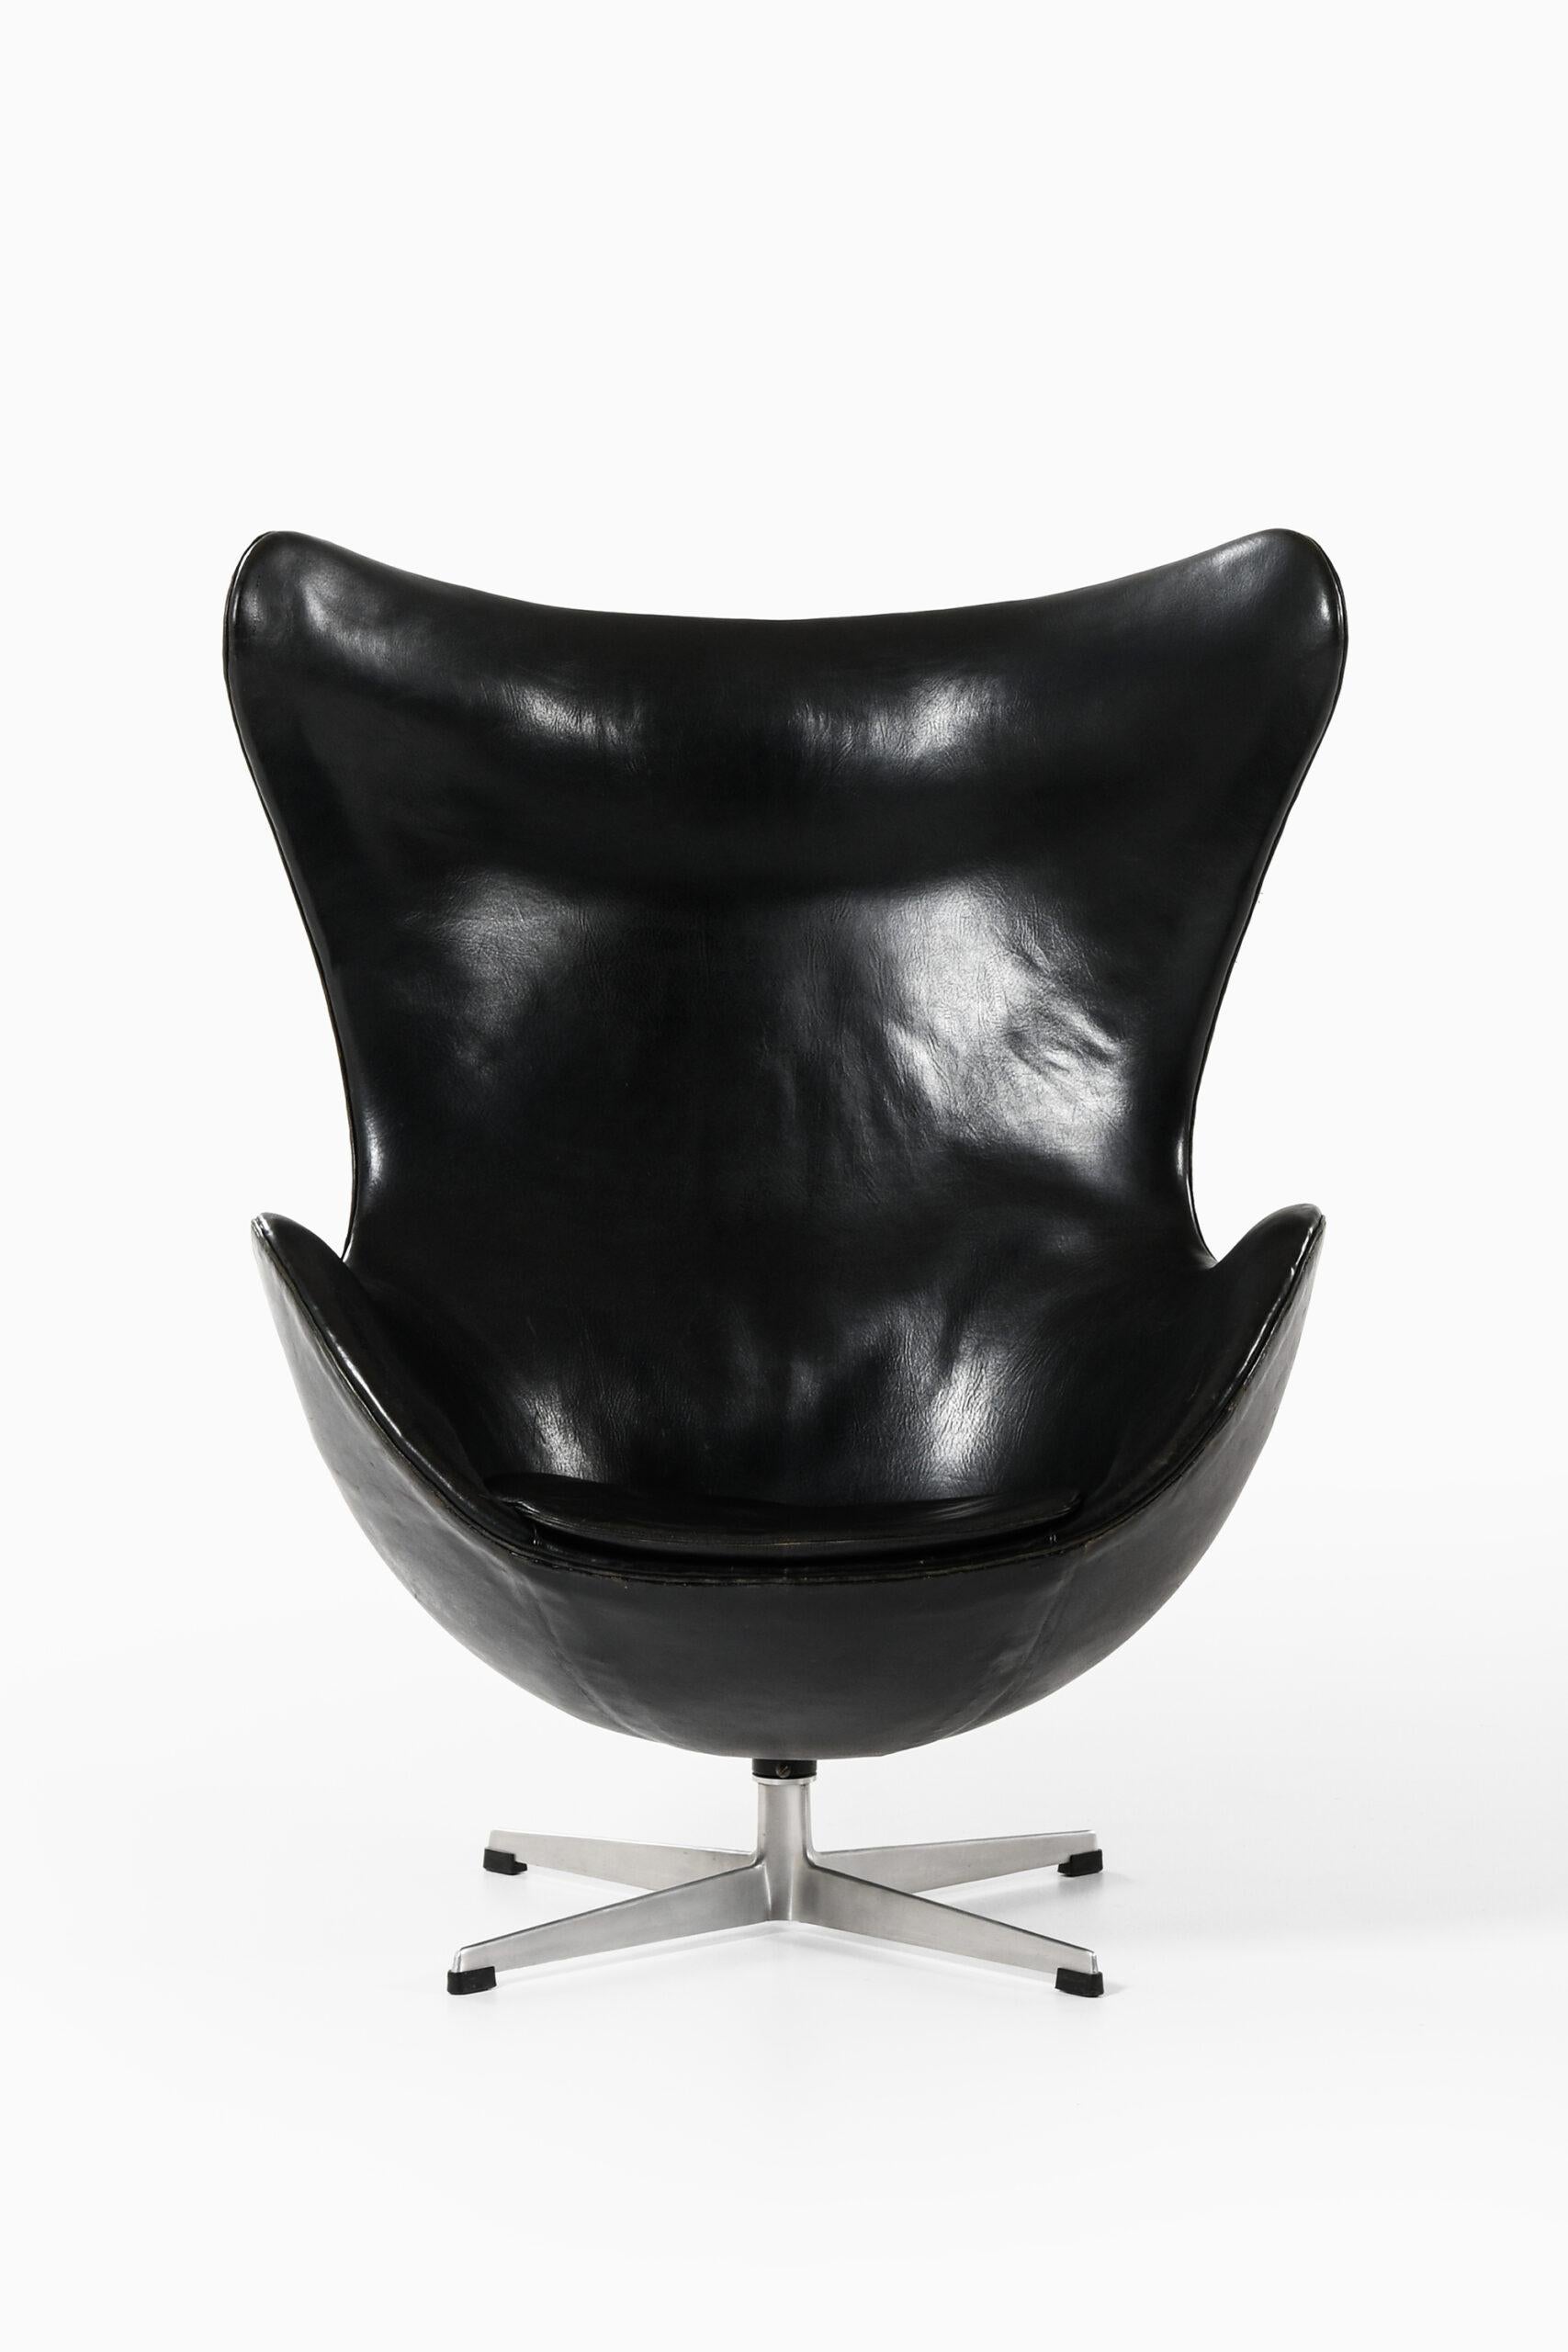 Rare easy chair model 3316 / Egg designed by Arne Jacobsen. Produced by Fritz Hansen in Denmark.